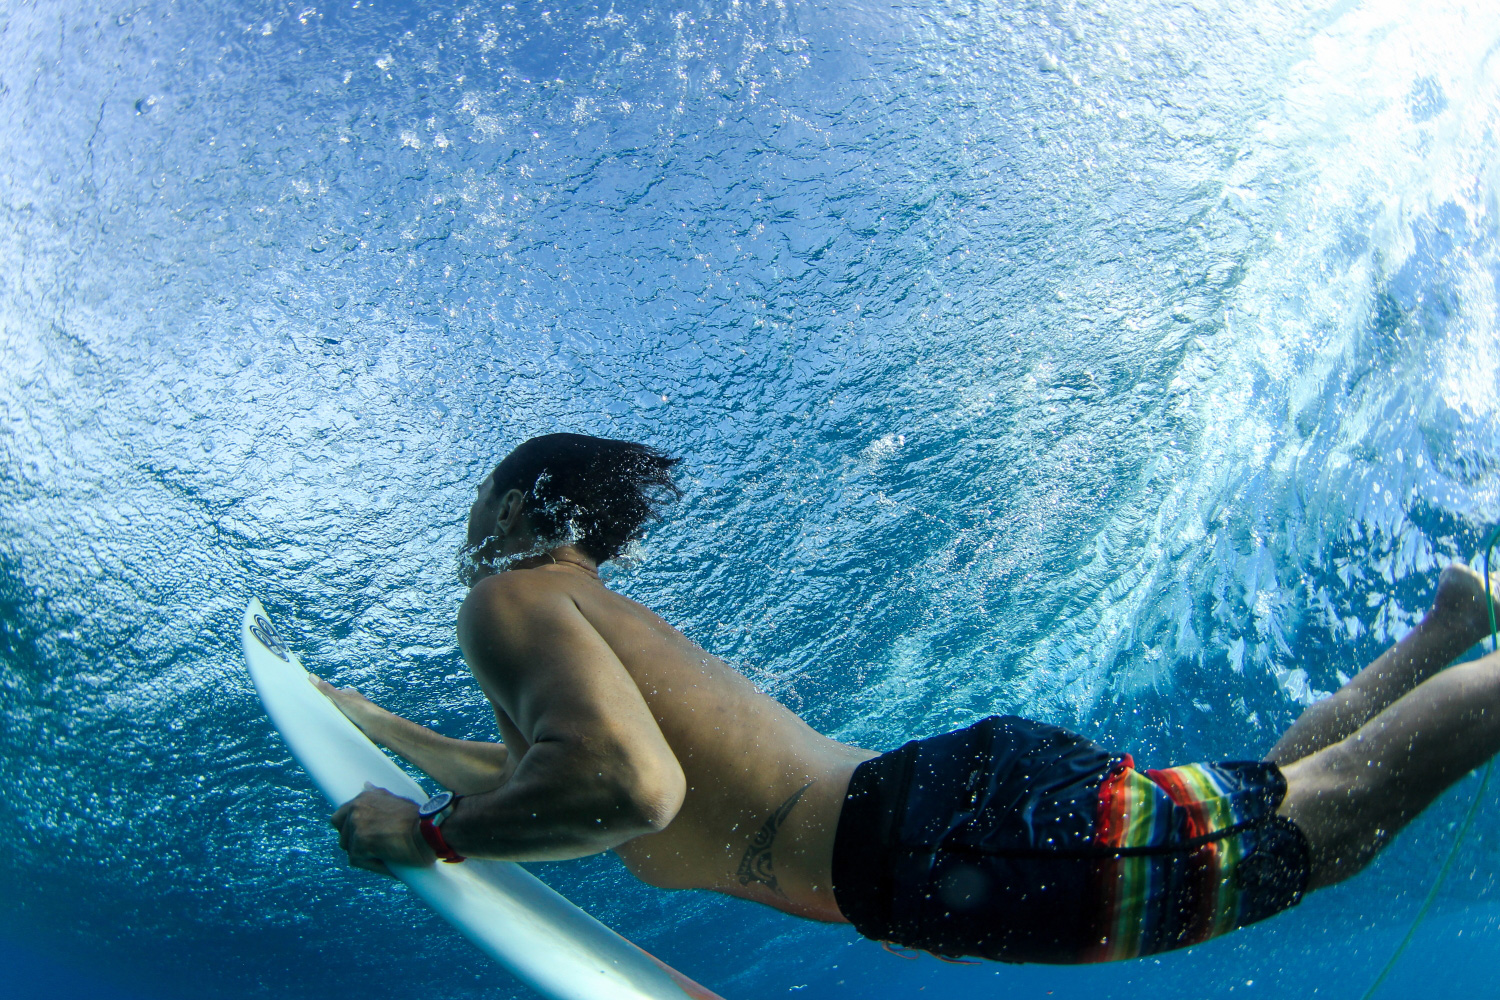 Hira teriinatoofa KDC underwater surfer